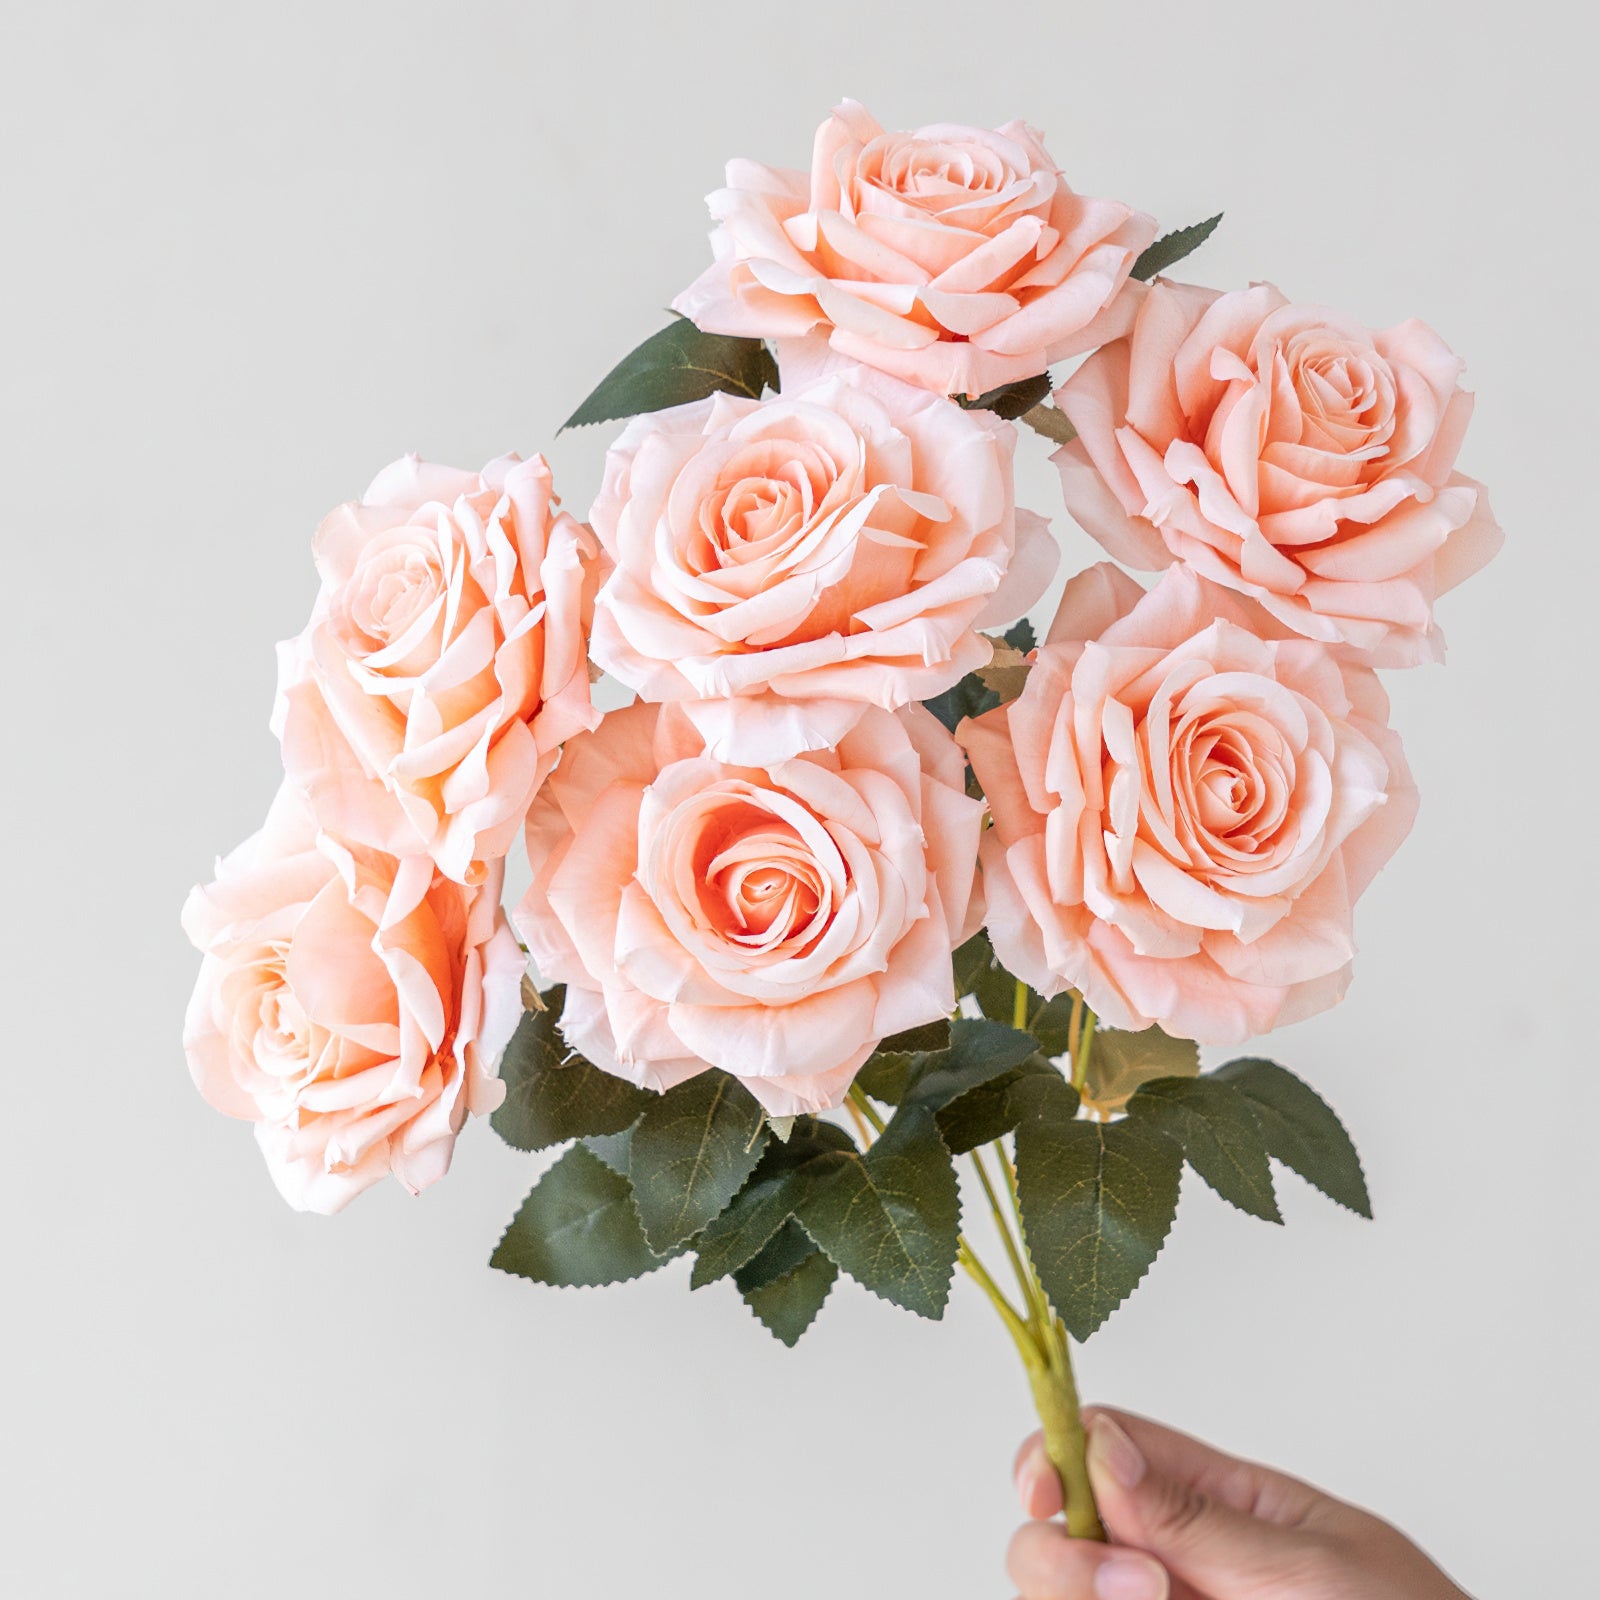 Bouquet de roses en soie élégant – Fleurs artificielles réalistes dans des couleurs assorties – Parfait pour la décoration et les cadeaux.